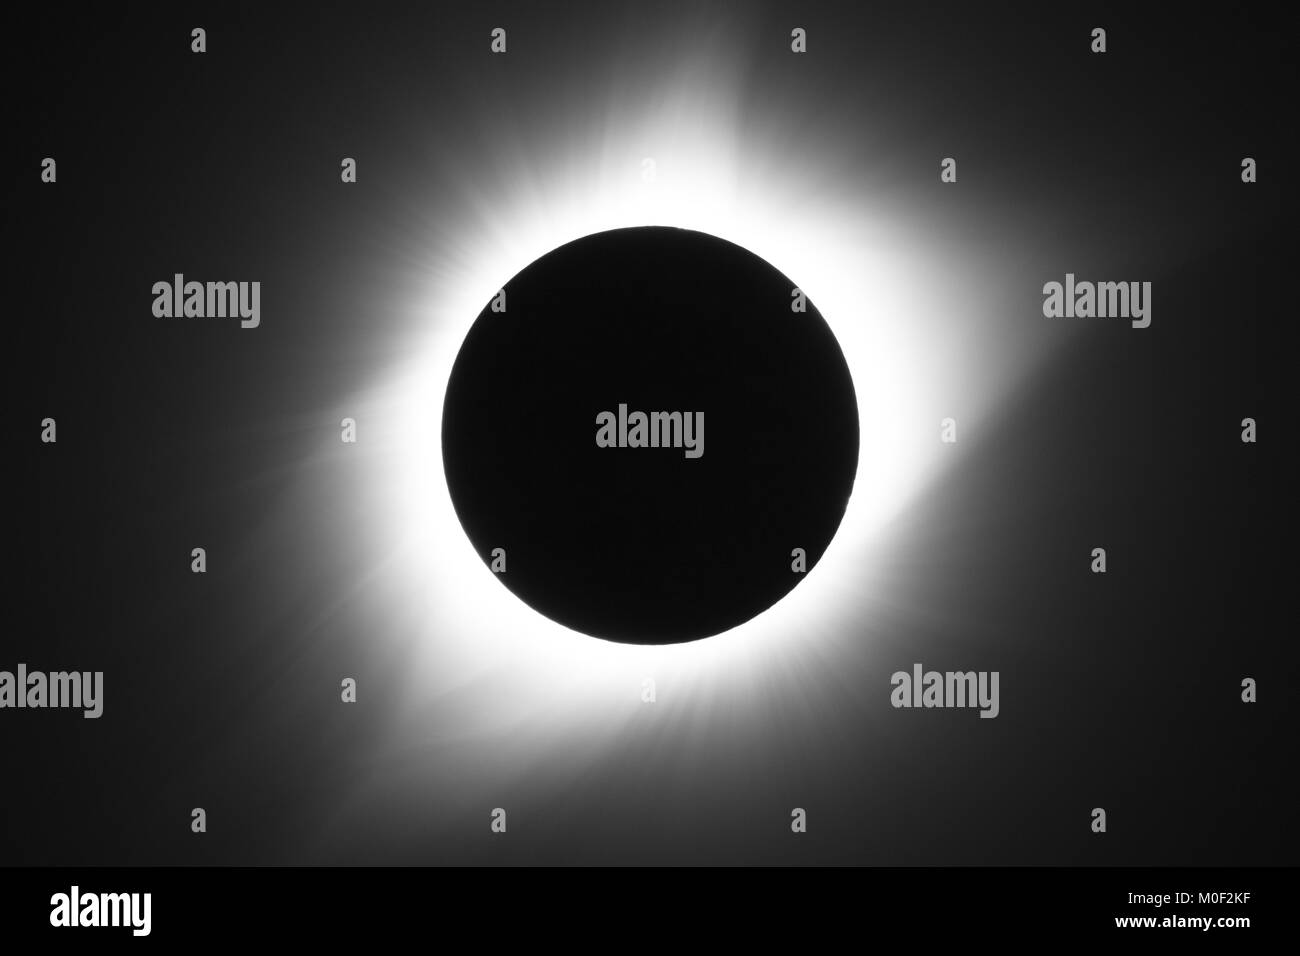 Totale Sonnenfinsternis im August 21 2017 auch als die "Große amerikanische Eclipse" - der sonnenflecken Prominenz Sonneneruptionen corona Mond penumbra Umbra bekannt Stockfoto